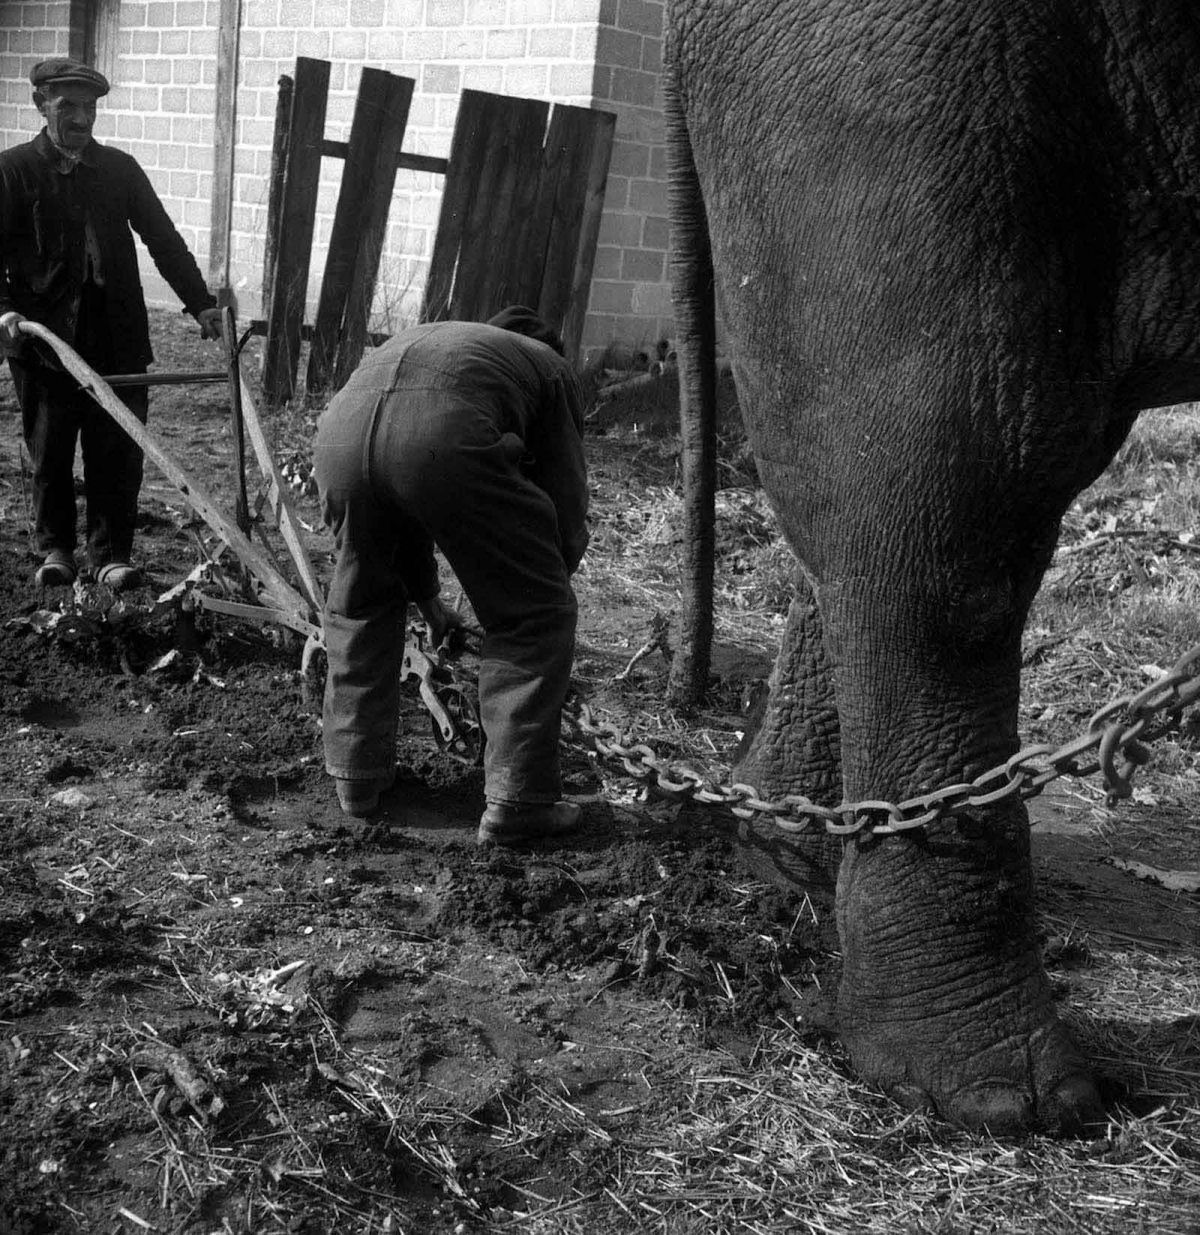 Quando os elefantes foram usados para ajudar no esforço de guerra 12